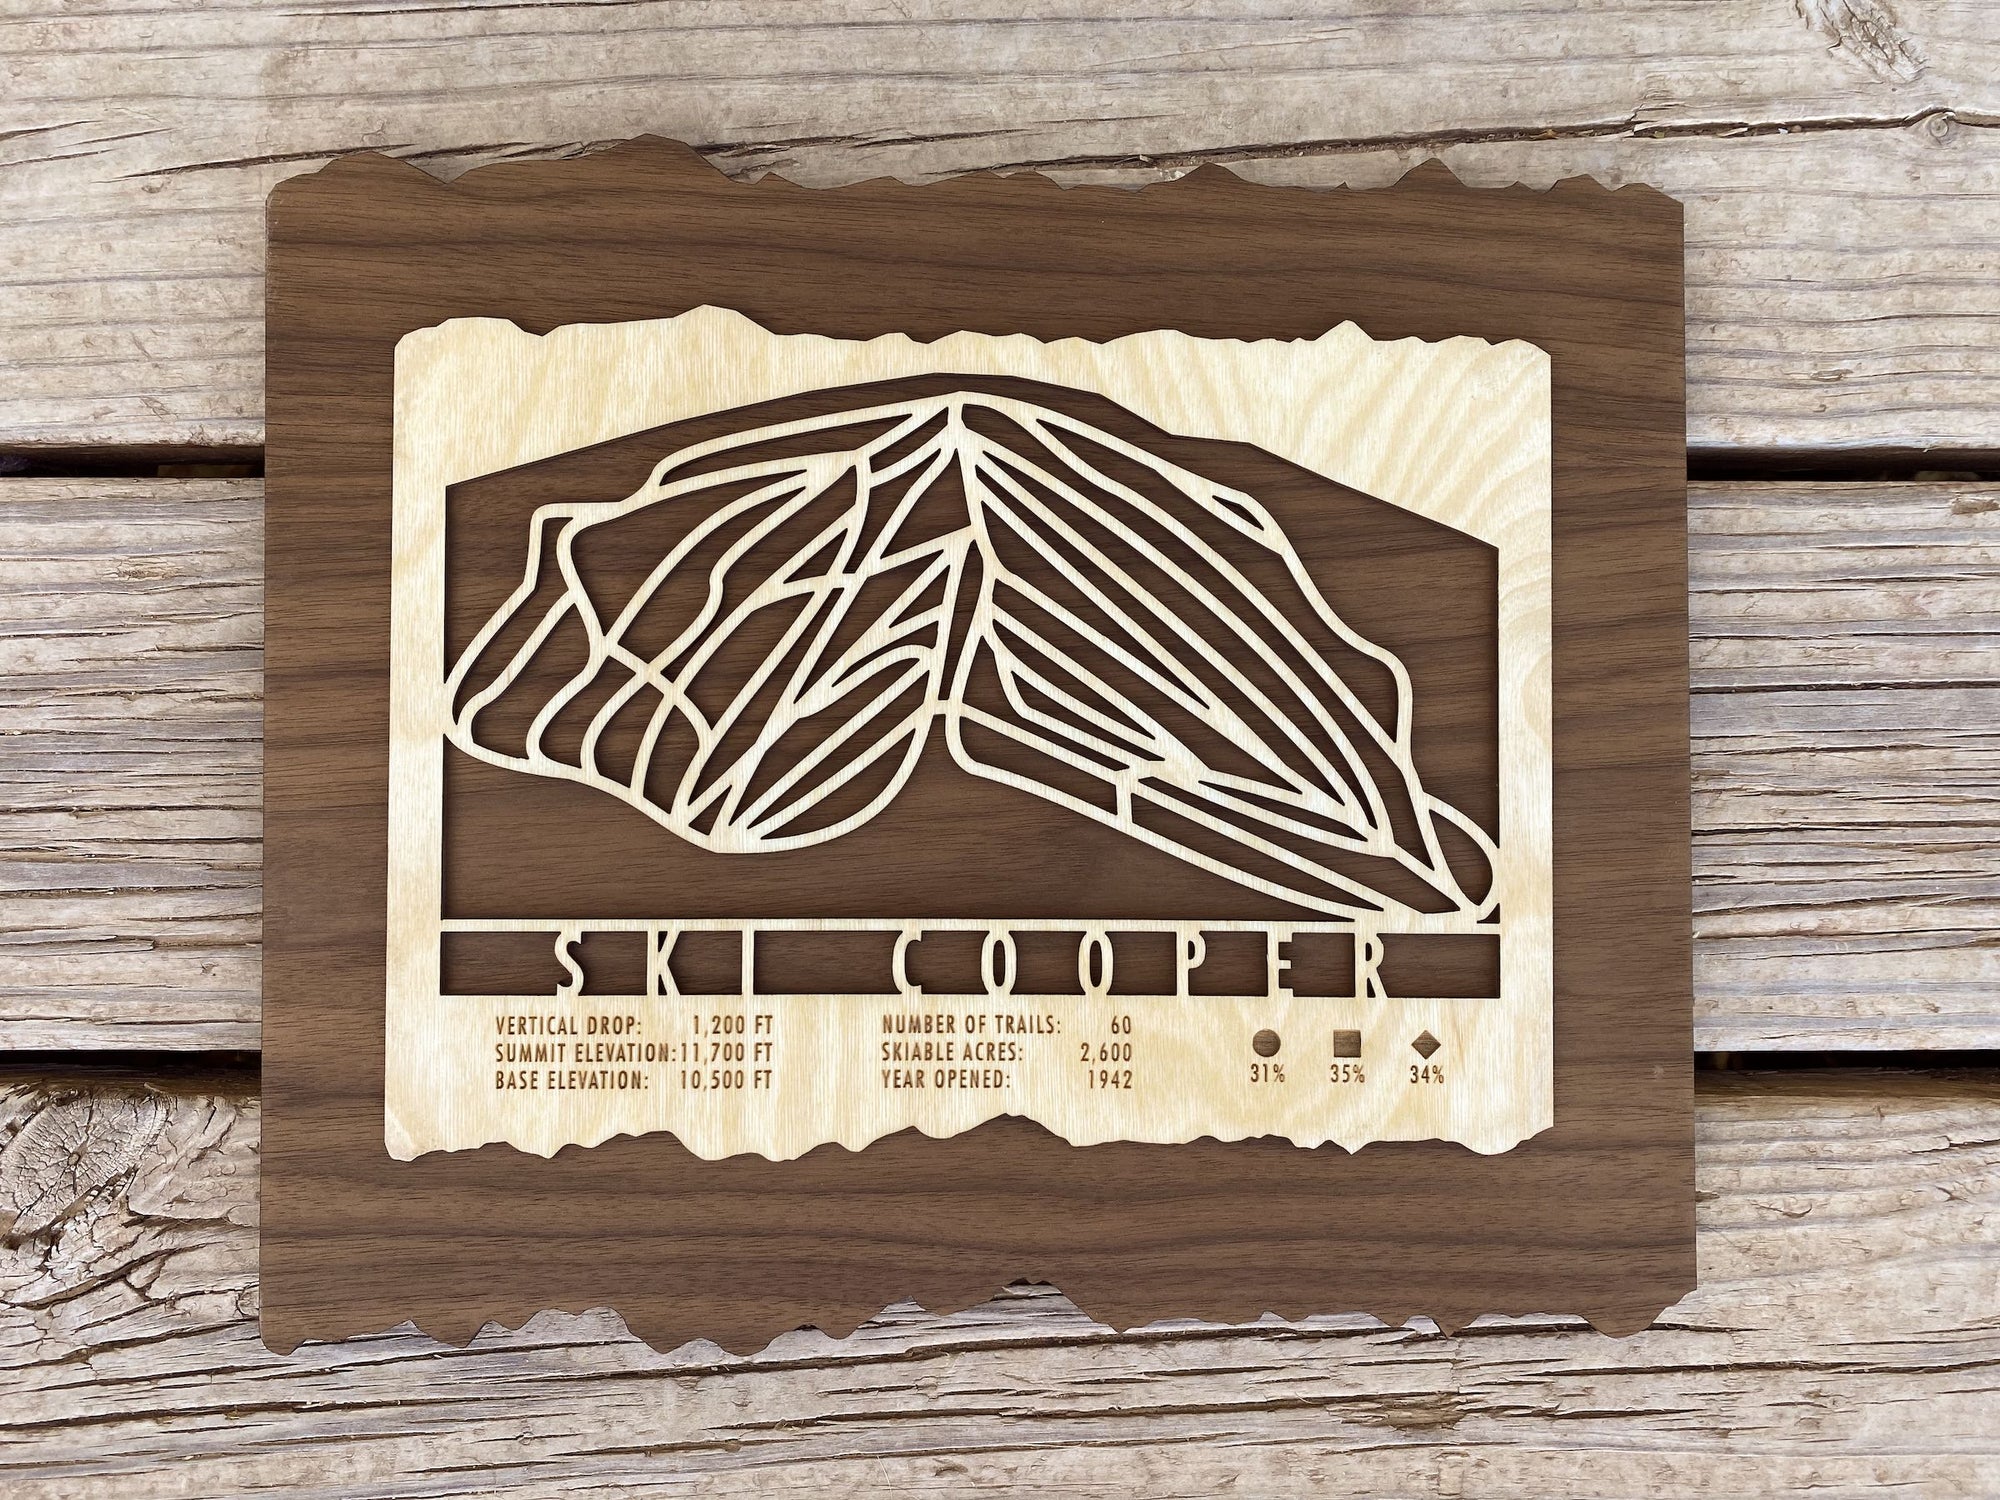 Ski Cooper Trail Map